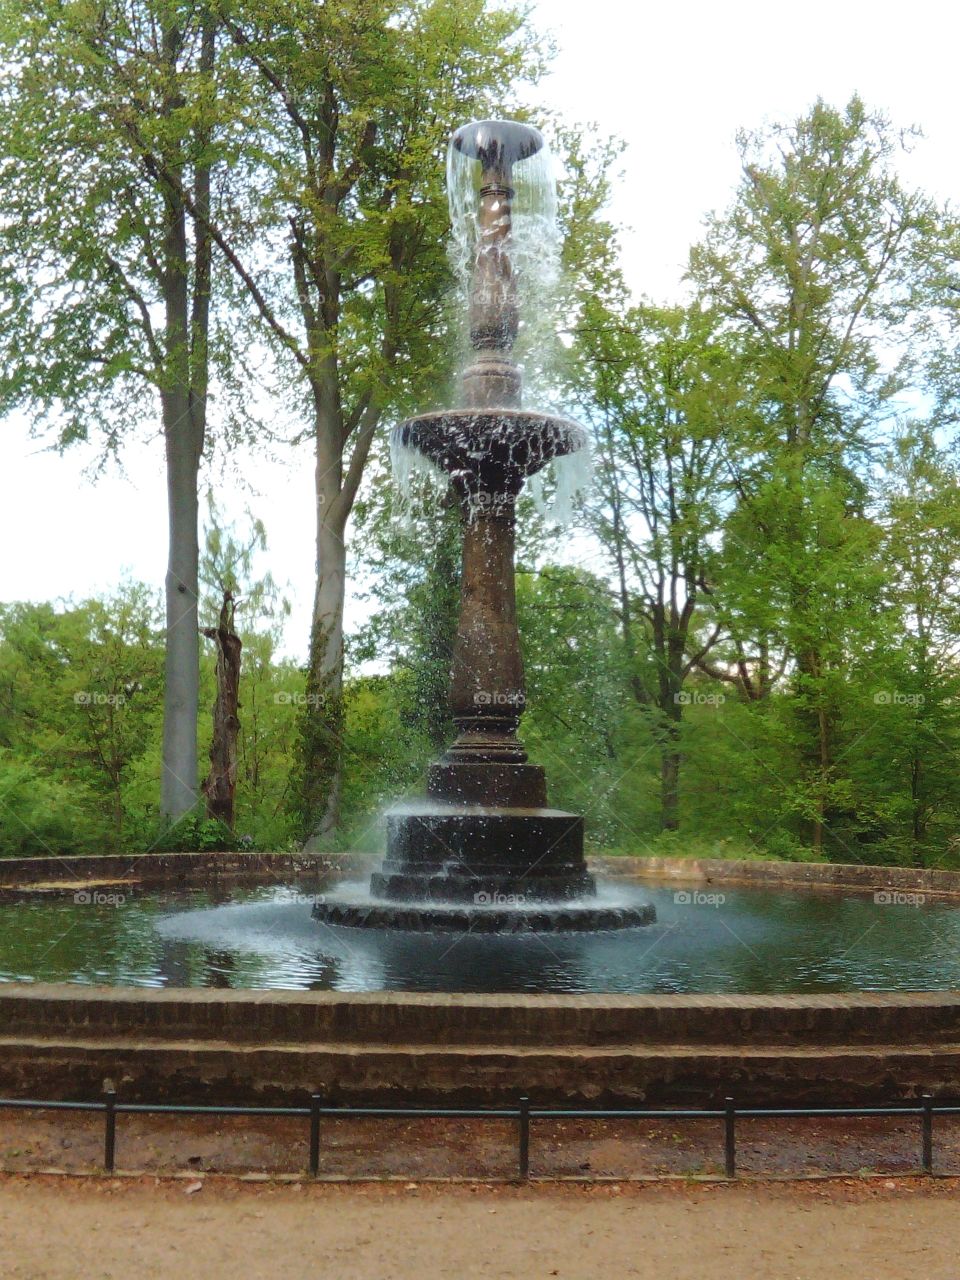 Fountain in Peacock Island, Berlin